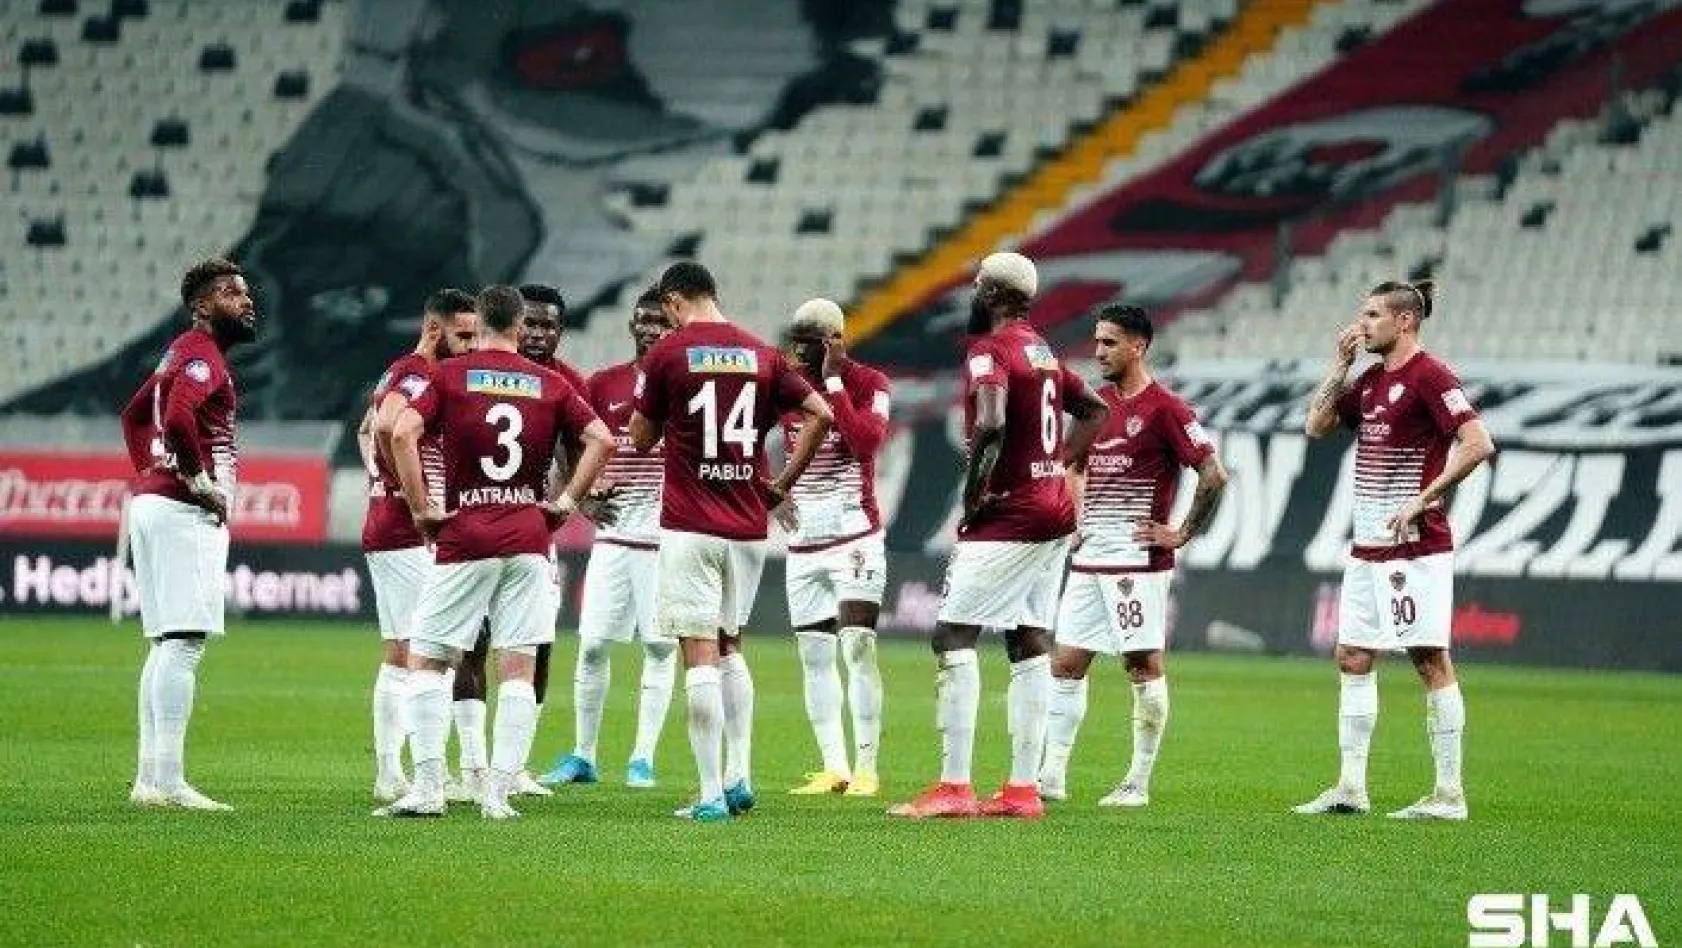 Hataysporlu futbolcular, 12. dakikada sahada toplantı yaptı!